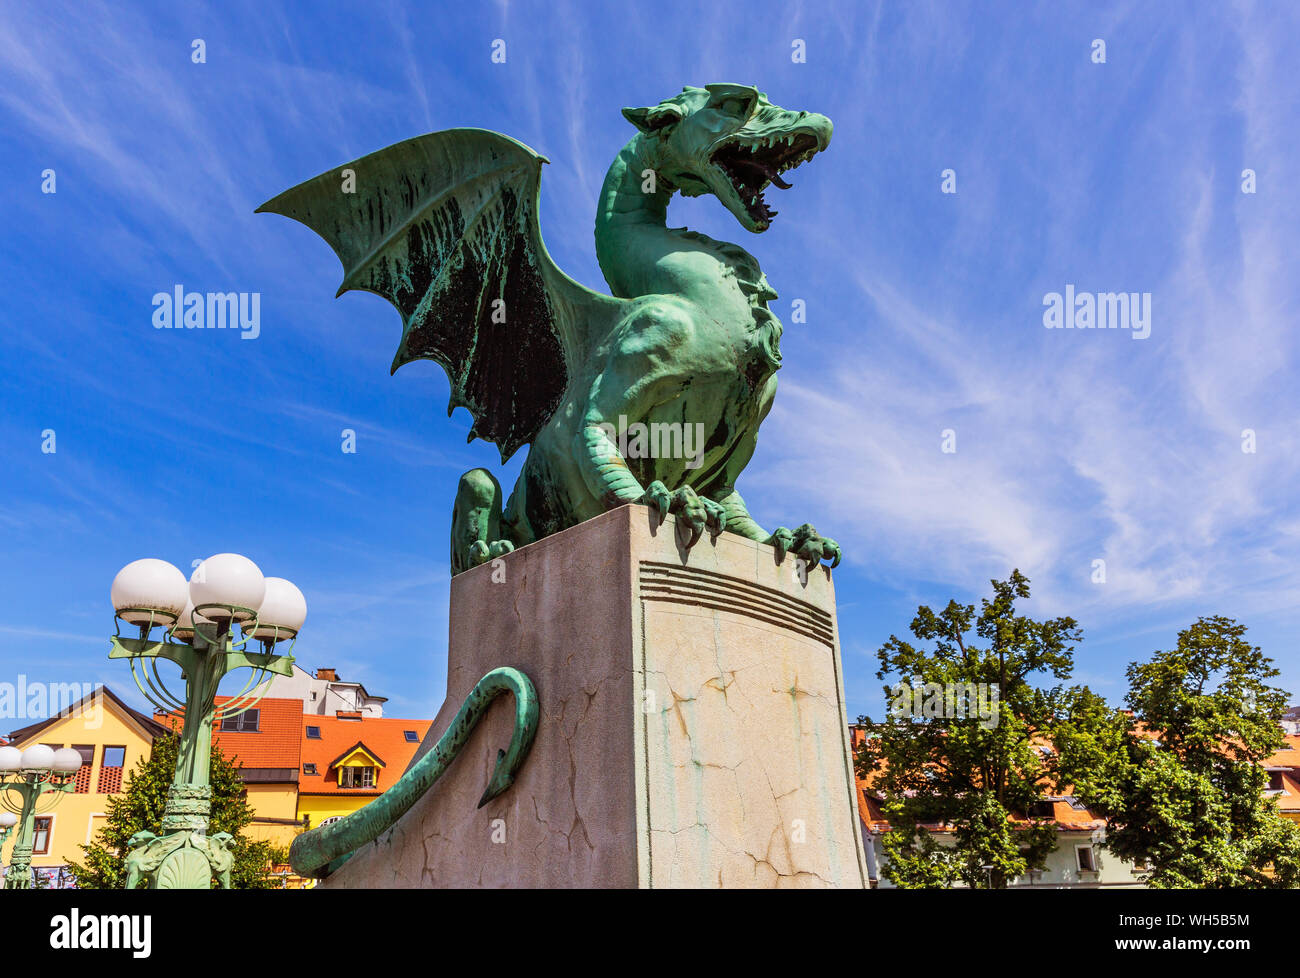 Ljubljana, Slovenia. Famous Dragon bridge (Zmajski most), symbol of Ljubljana. Stock Photo